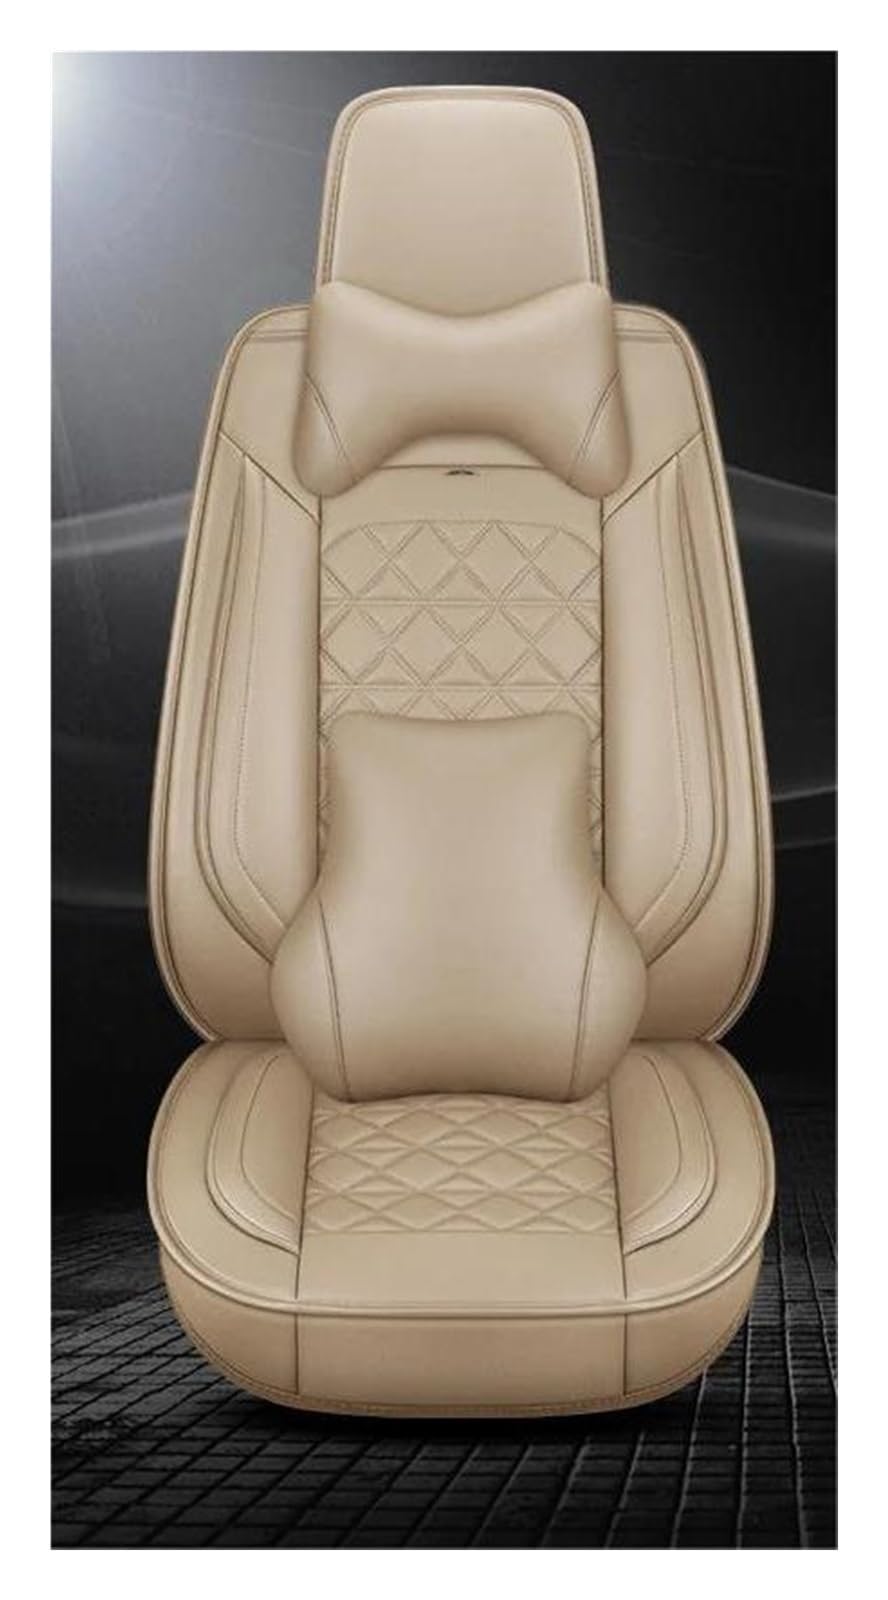 FOGJCMET Auto-Sitzbezüge Leder Auto Sitzbezug Für Für VW Für Polo Limousine Für 2007 Für Golf 5 6 7 Für Passat B5 B6 B7 Für Tiguan Autositzschoner(Beige,Luxury) von FOGJCMET